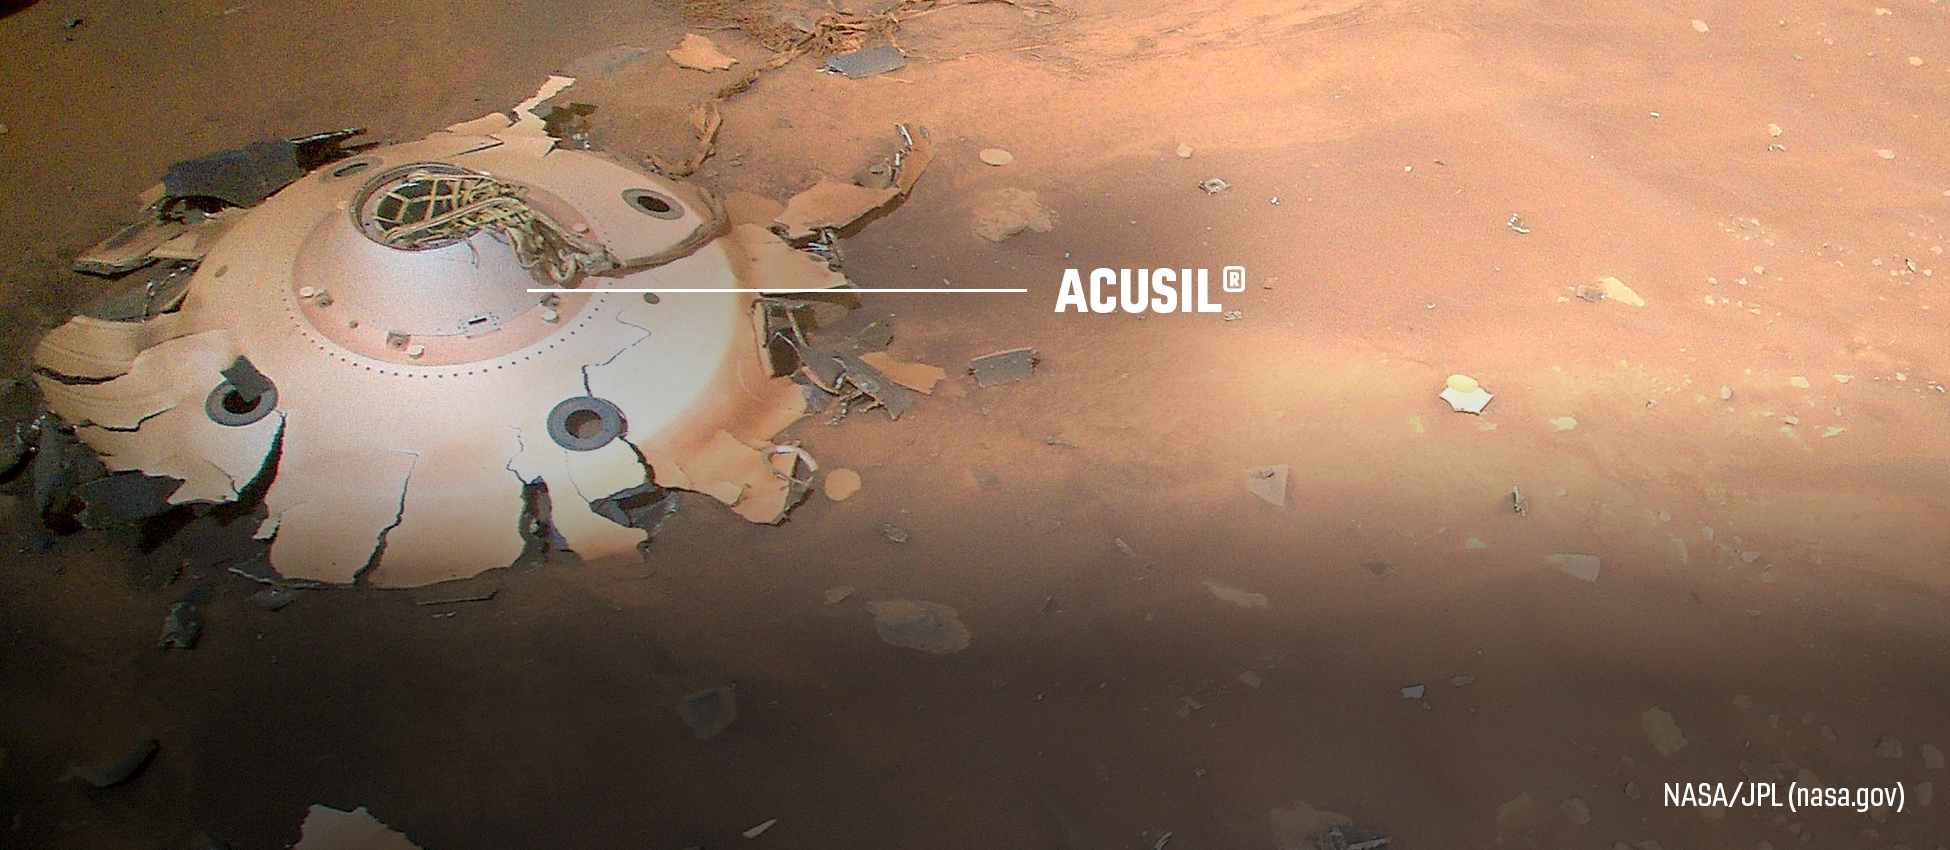 Acusil® on the Mars 2020 Lander mission